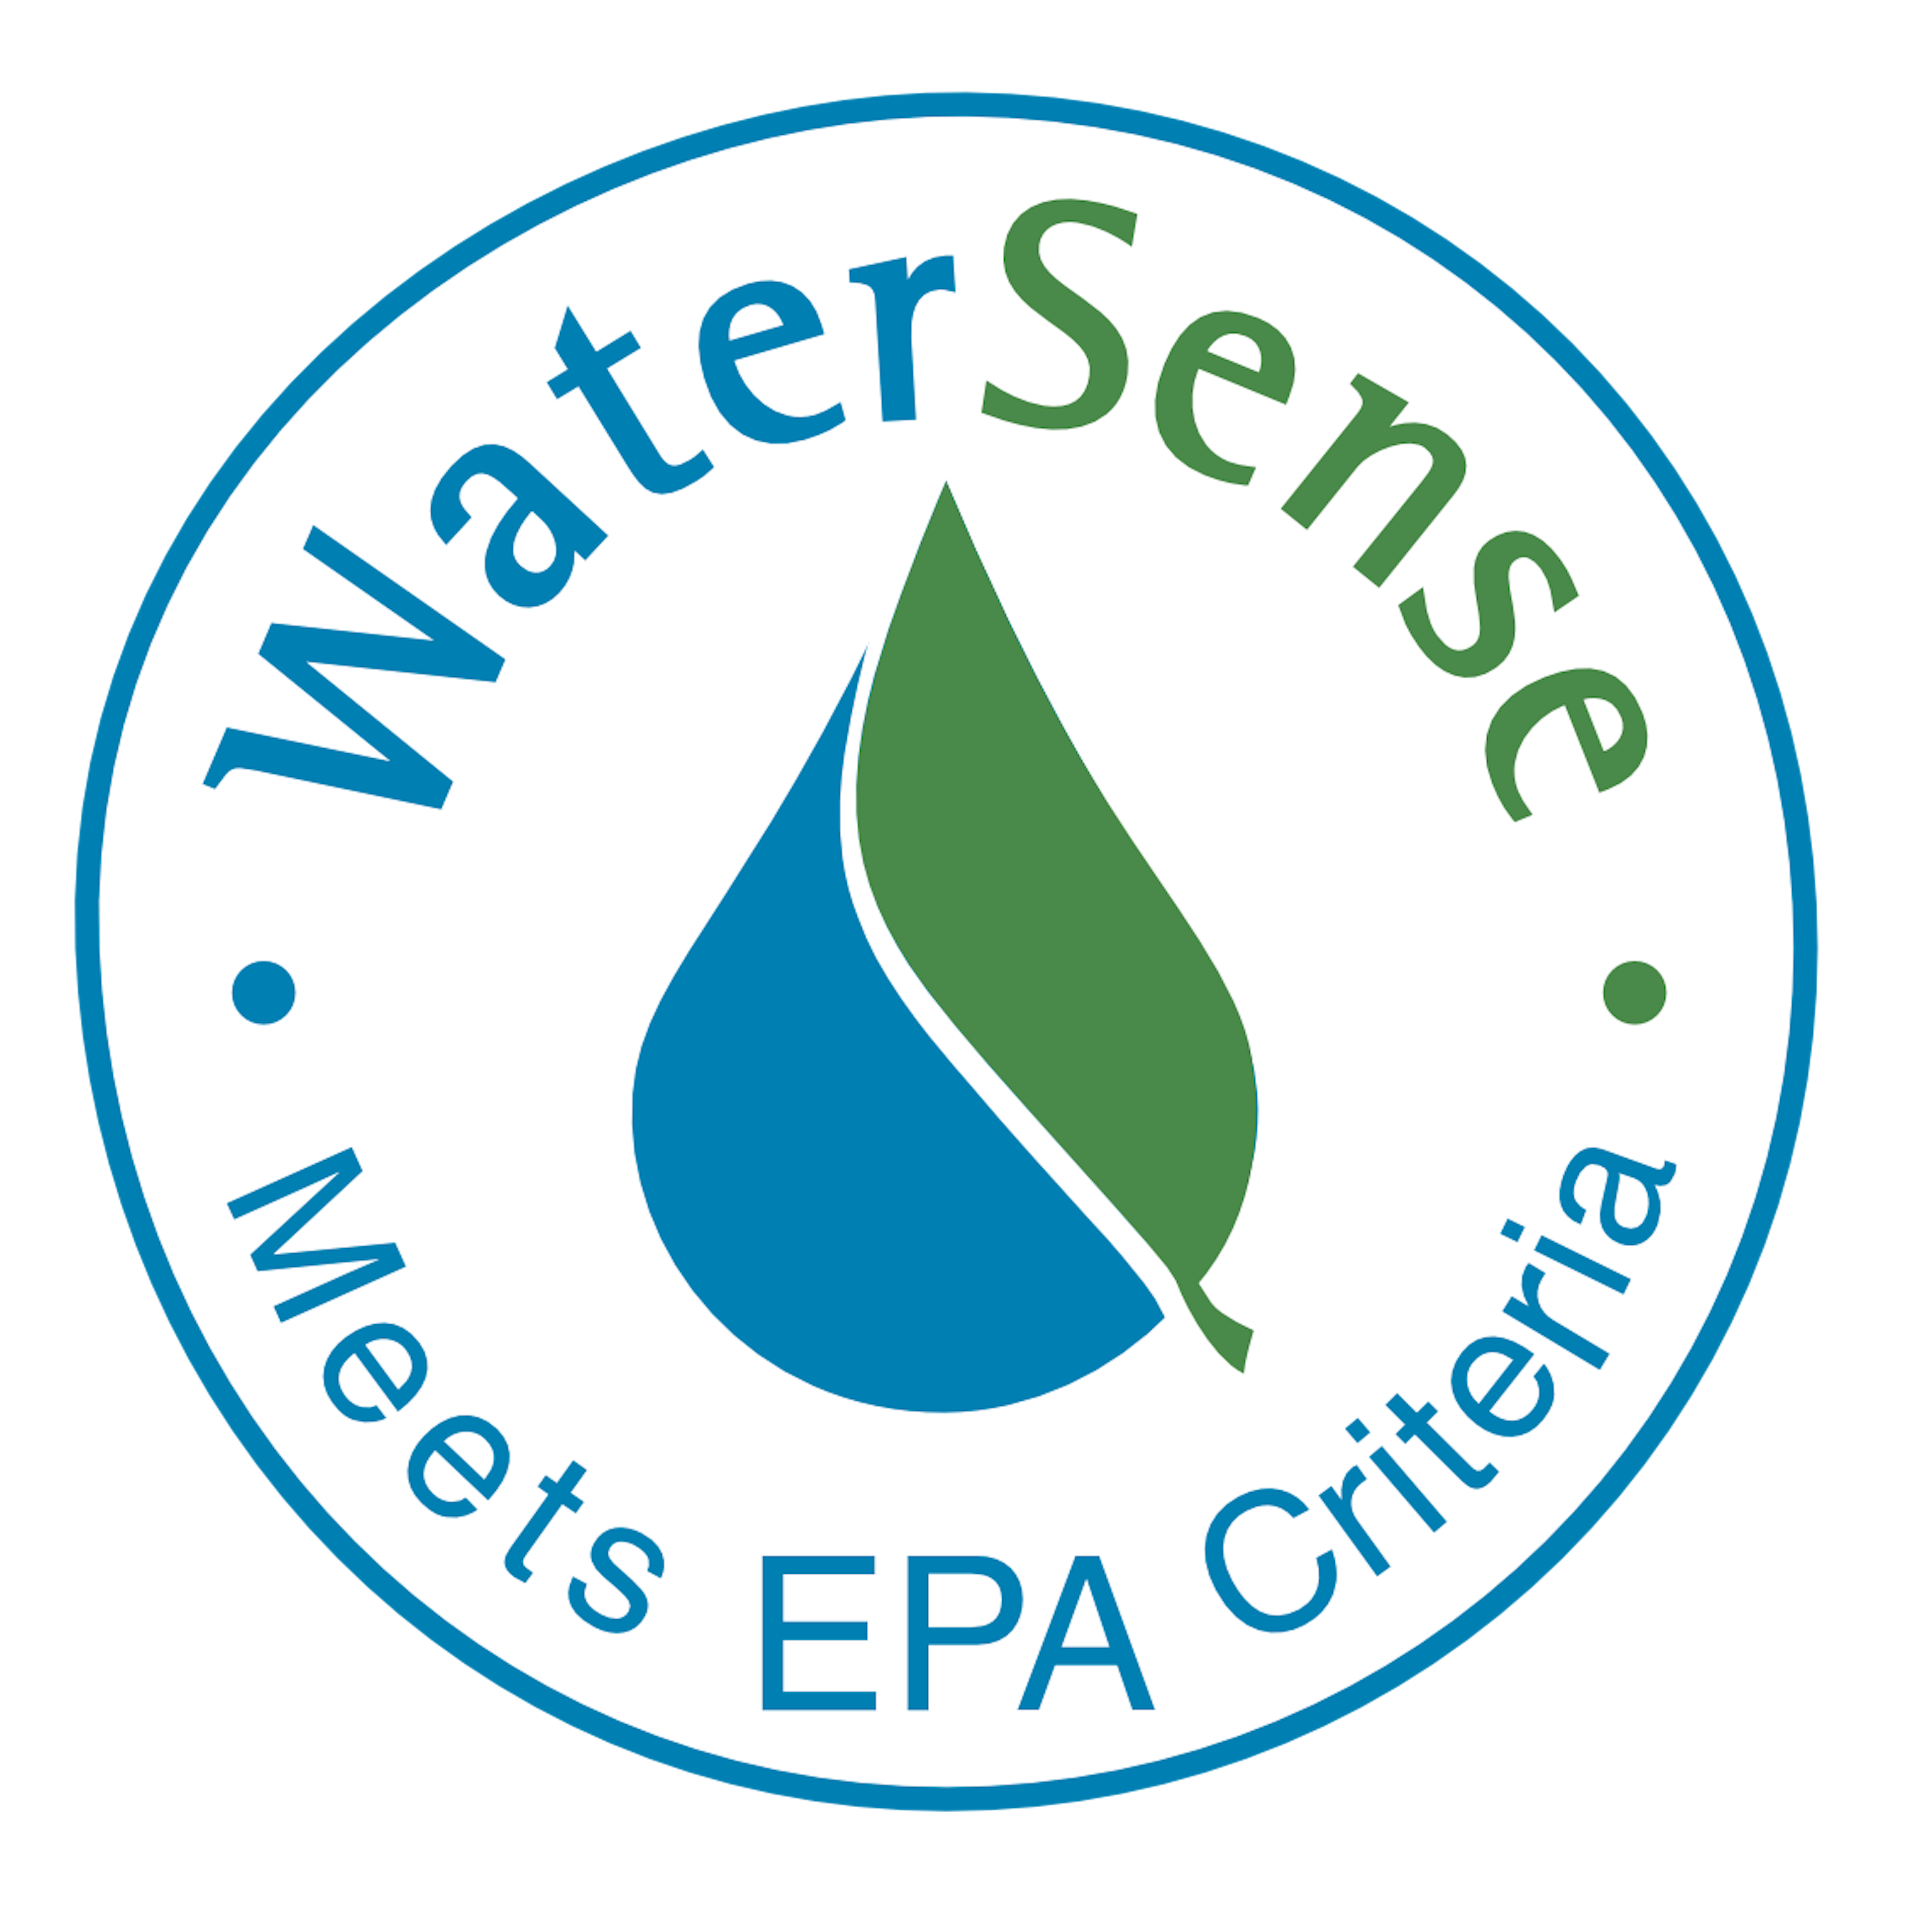 WaterSense Logo